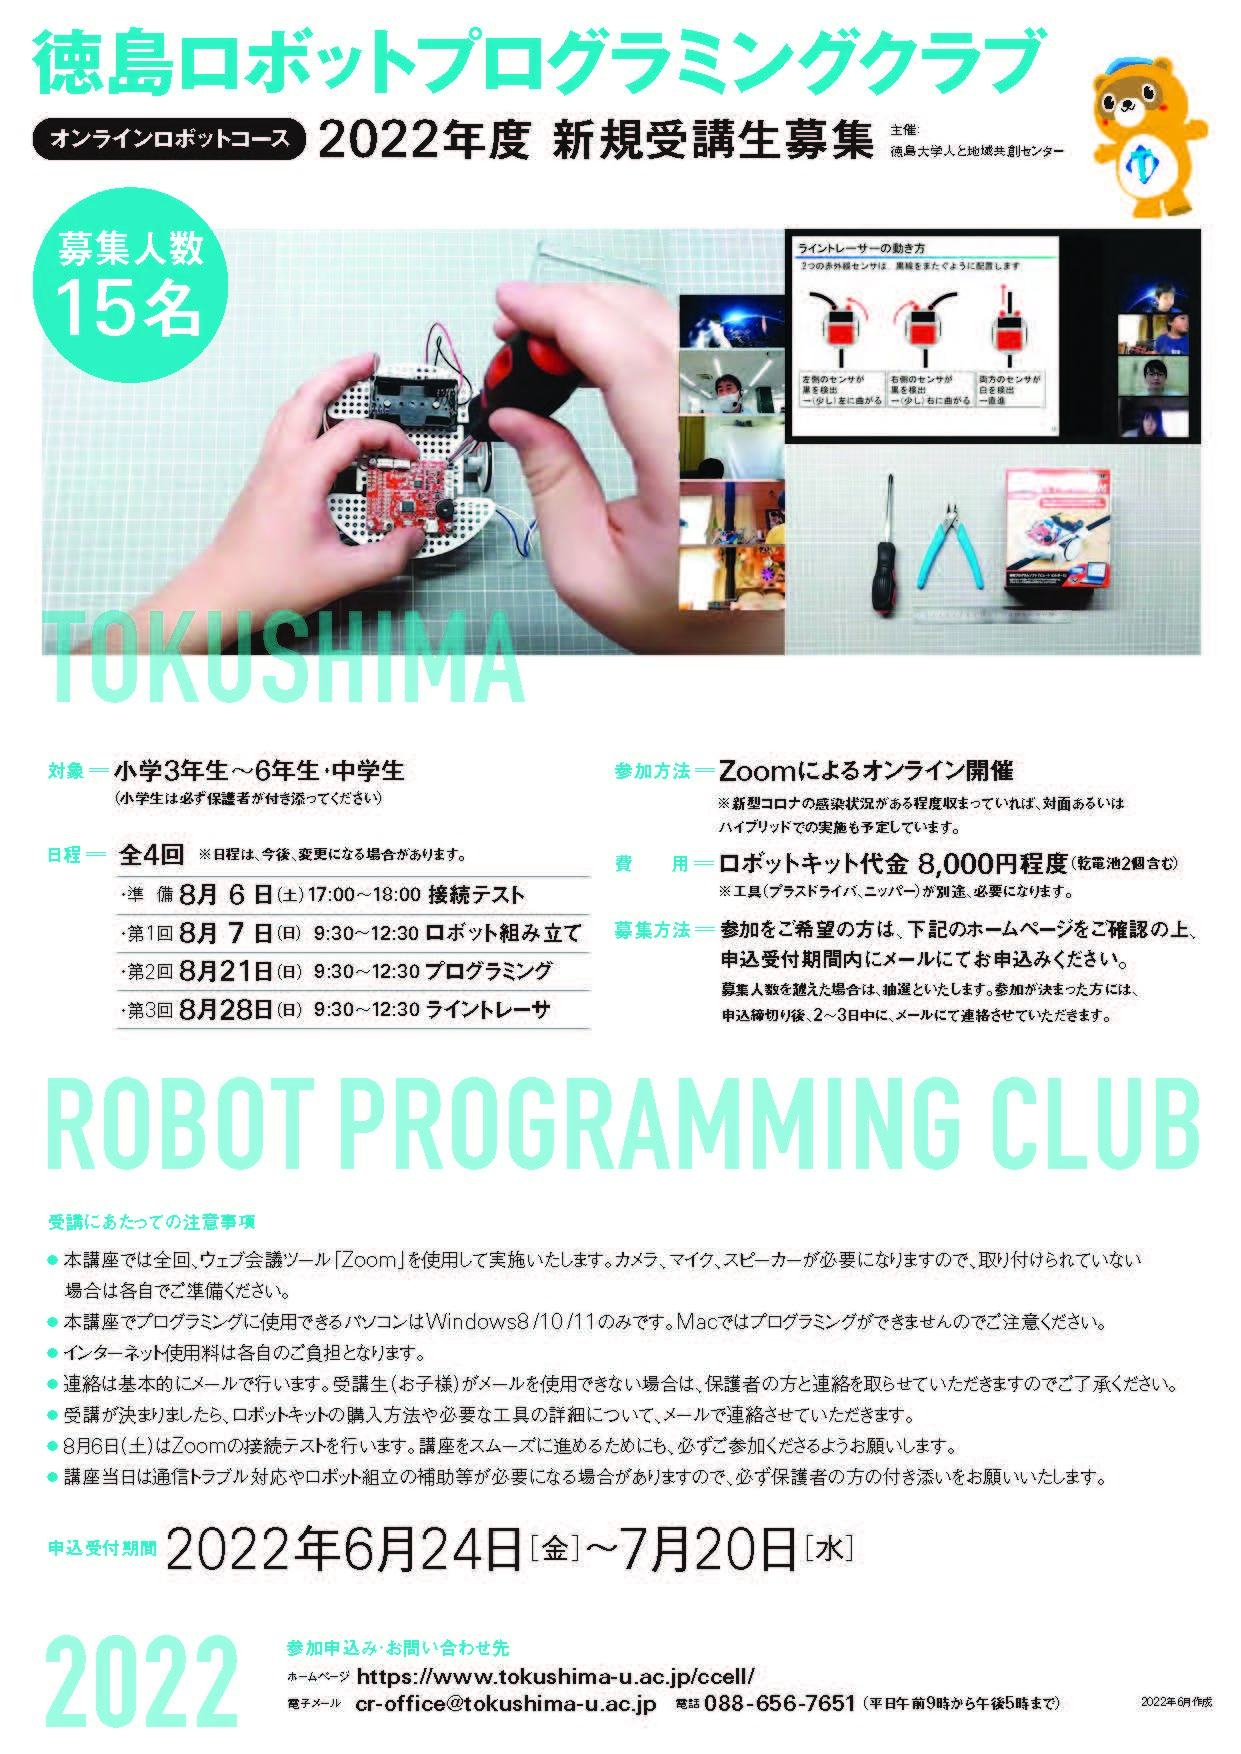 ロボットプログラミング (JPG 725KB)